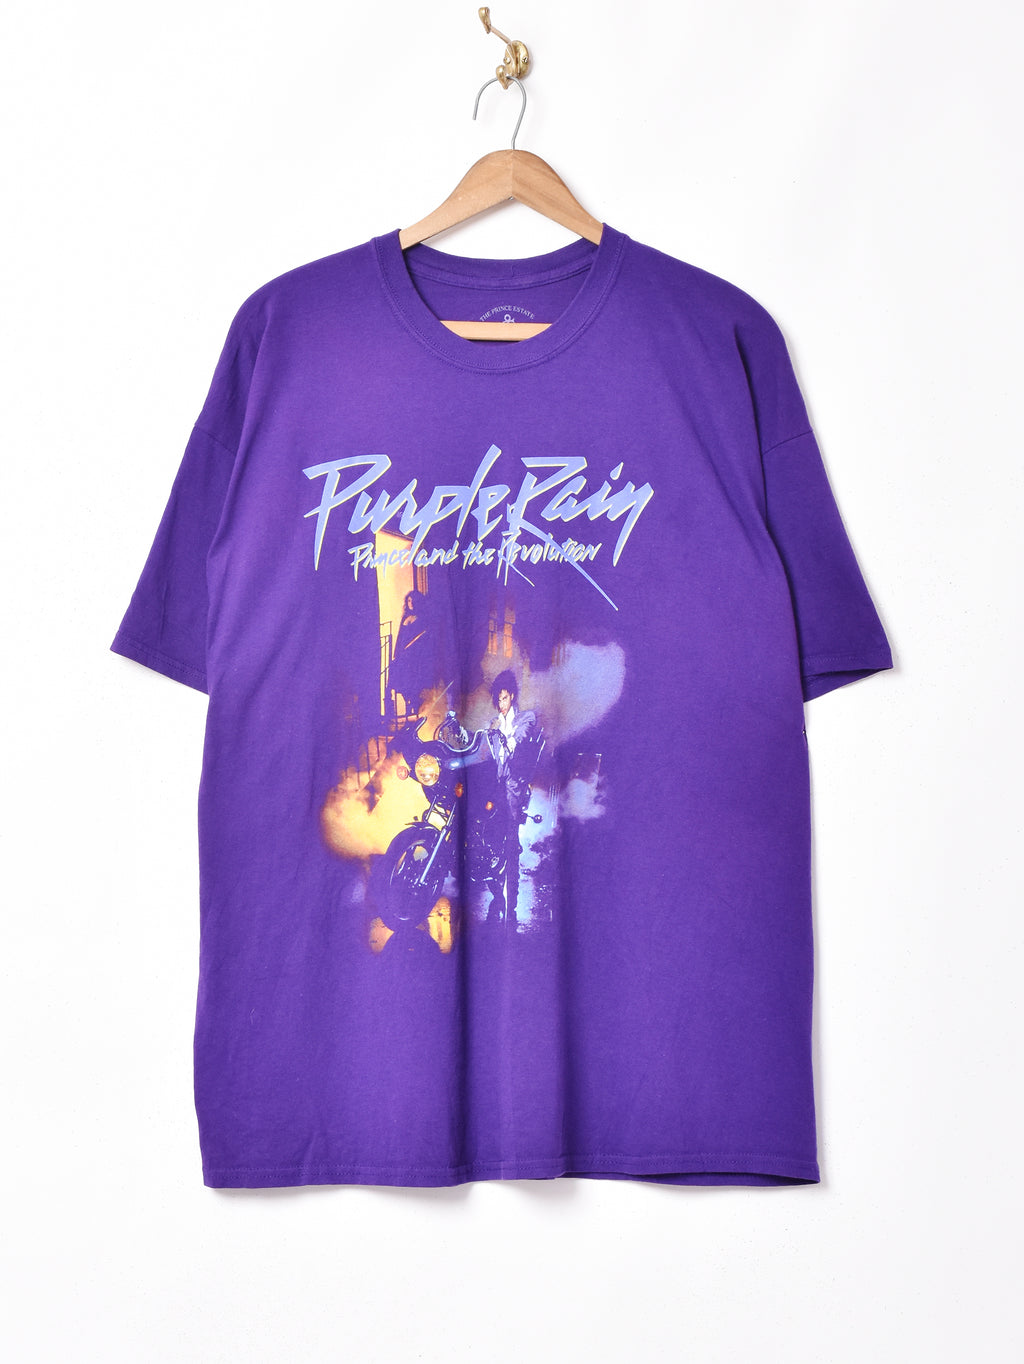 Prince オフィシャルTシャツ – 古着屋Top of the Hillのネット通販サイト